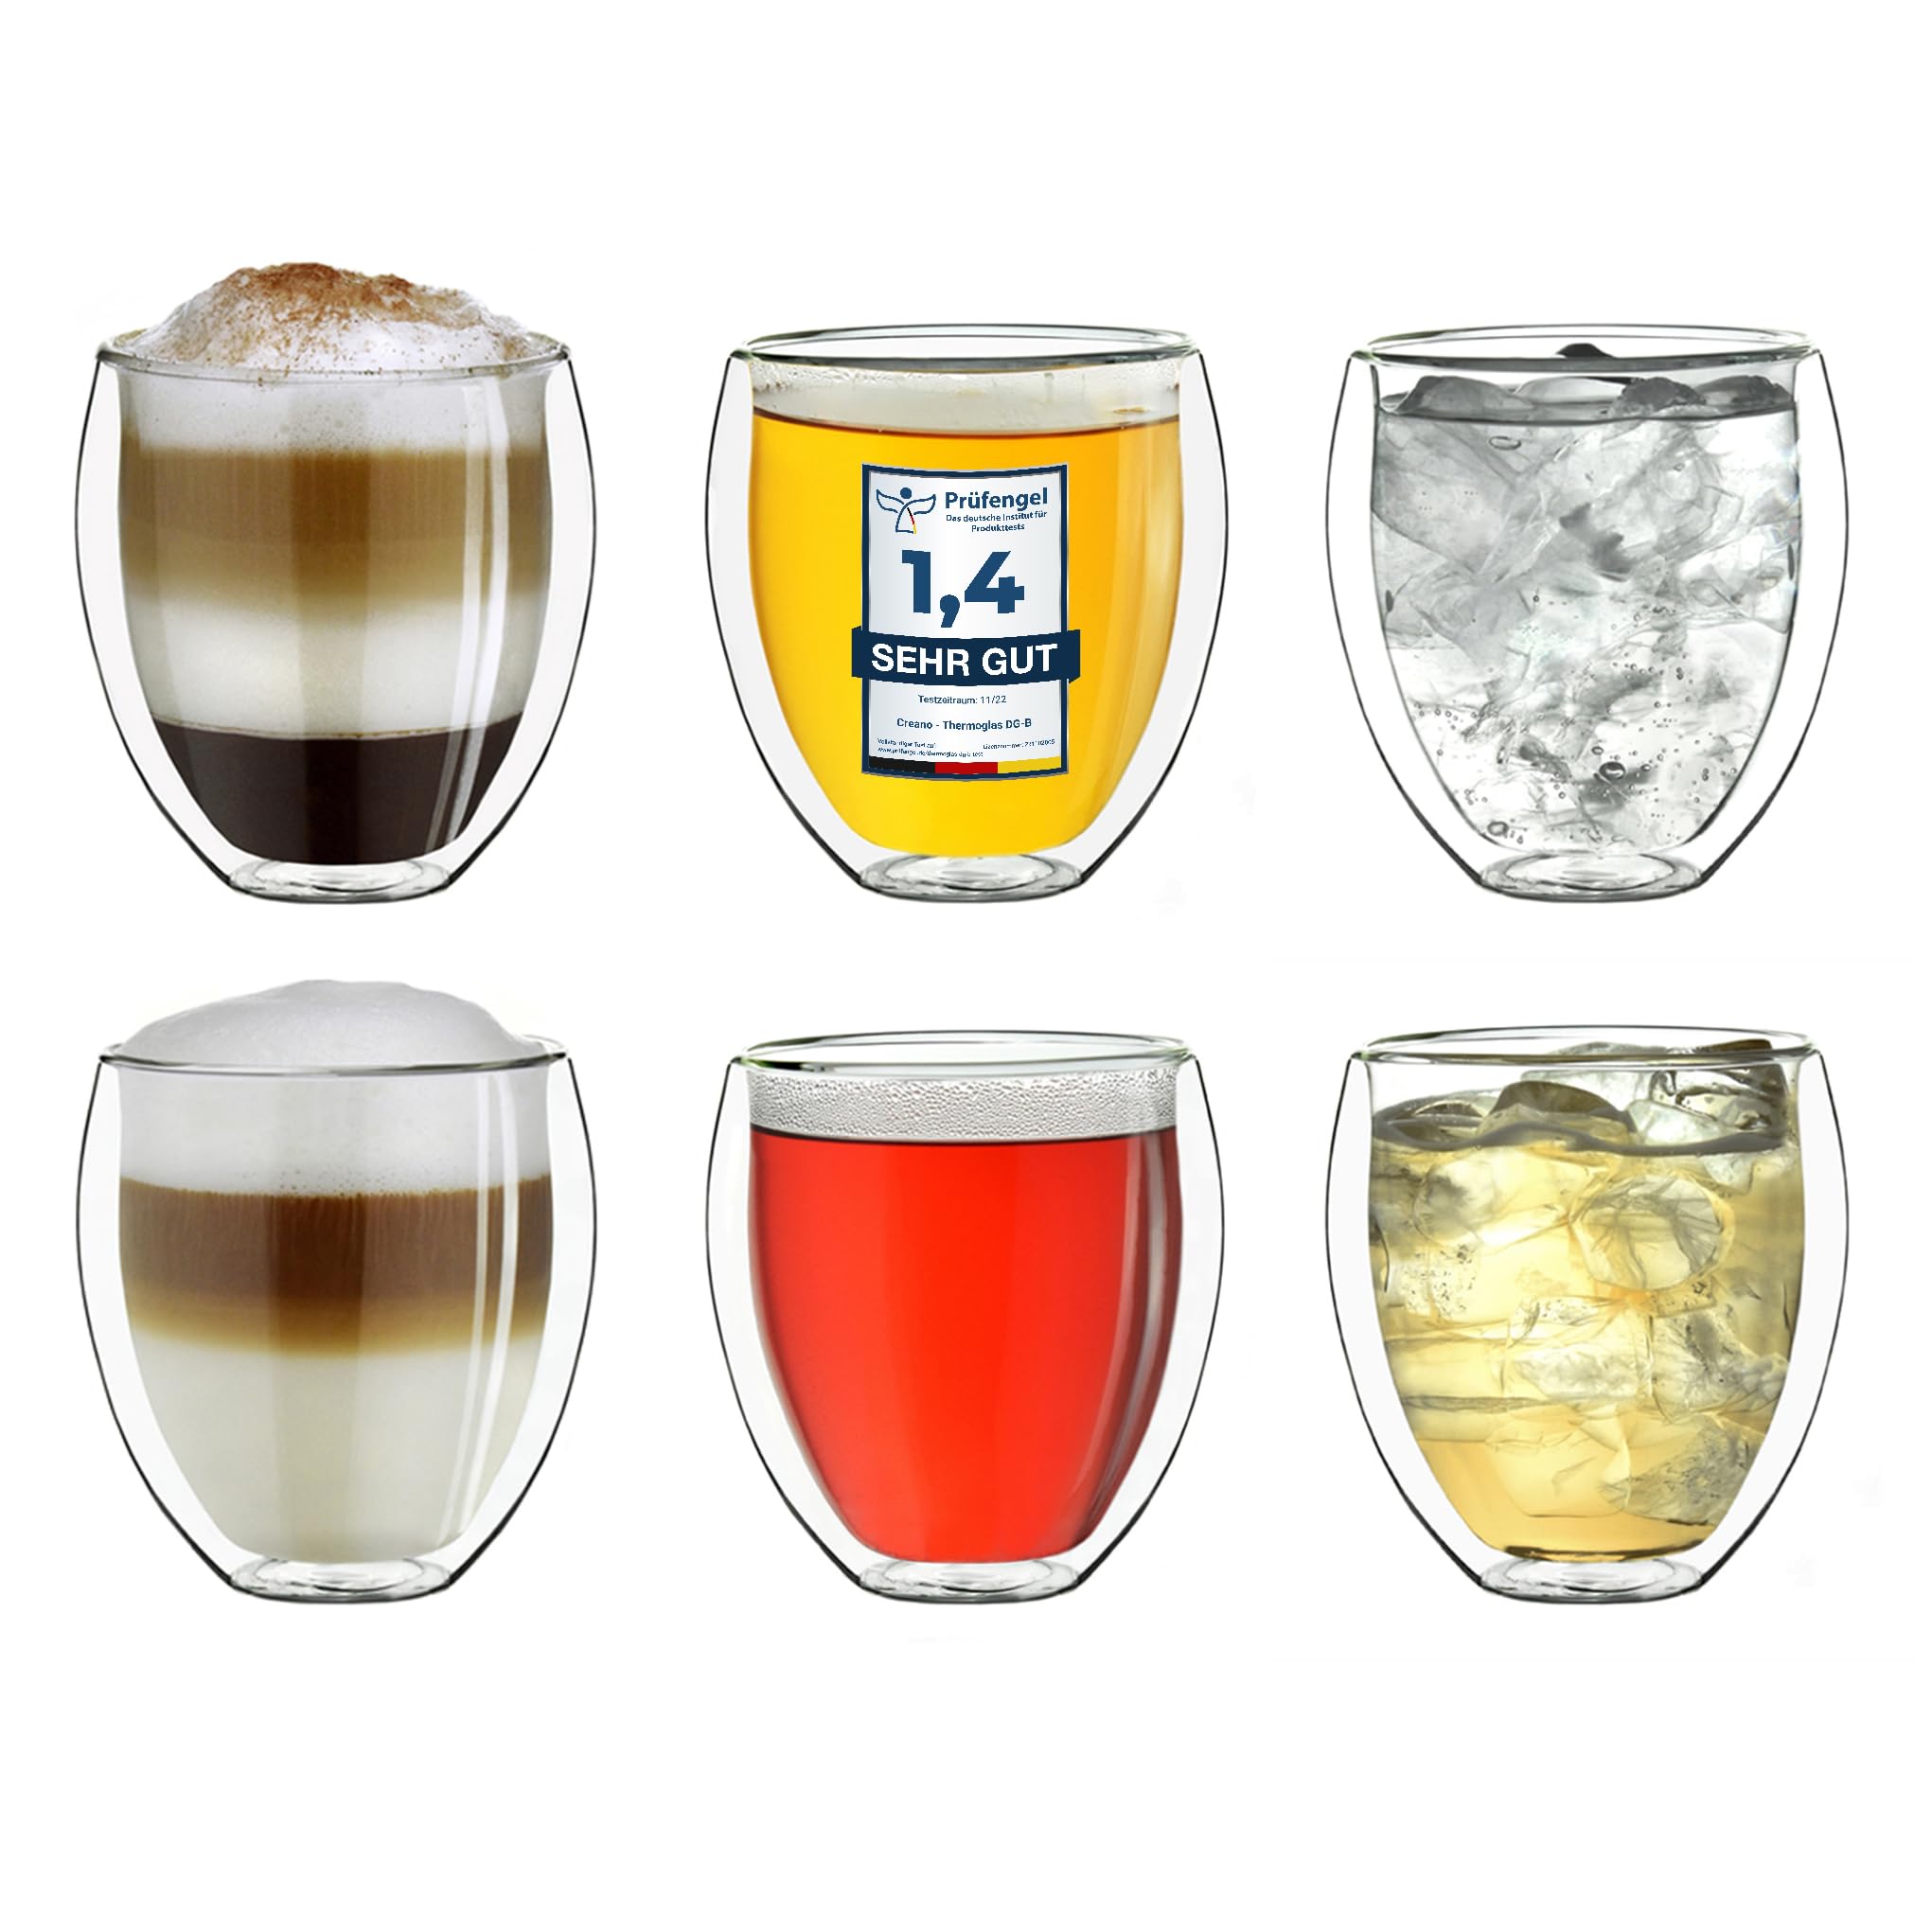 Creano doppelwandige Gläser 250ml „DG-Bauchig“, 6er Set, großes Thermoglas doppelwandig aus Borosilikatglas, Kaffeegläser, Teegläser, Latte Gläser, Doppelwandgläser